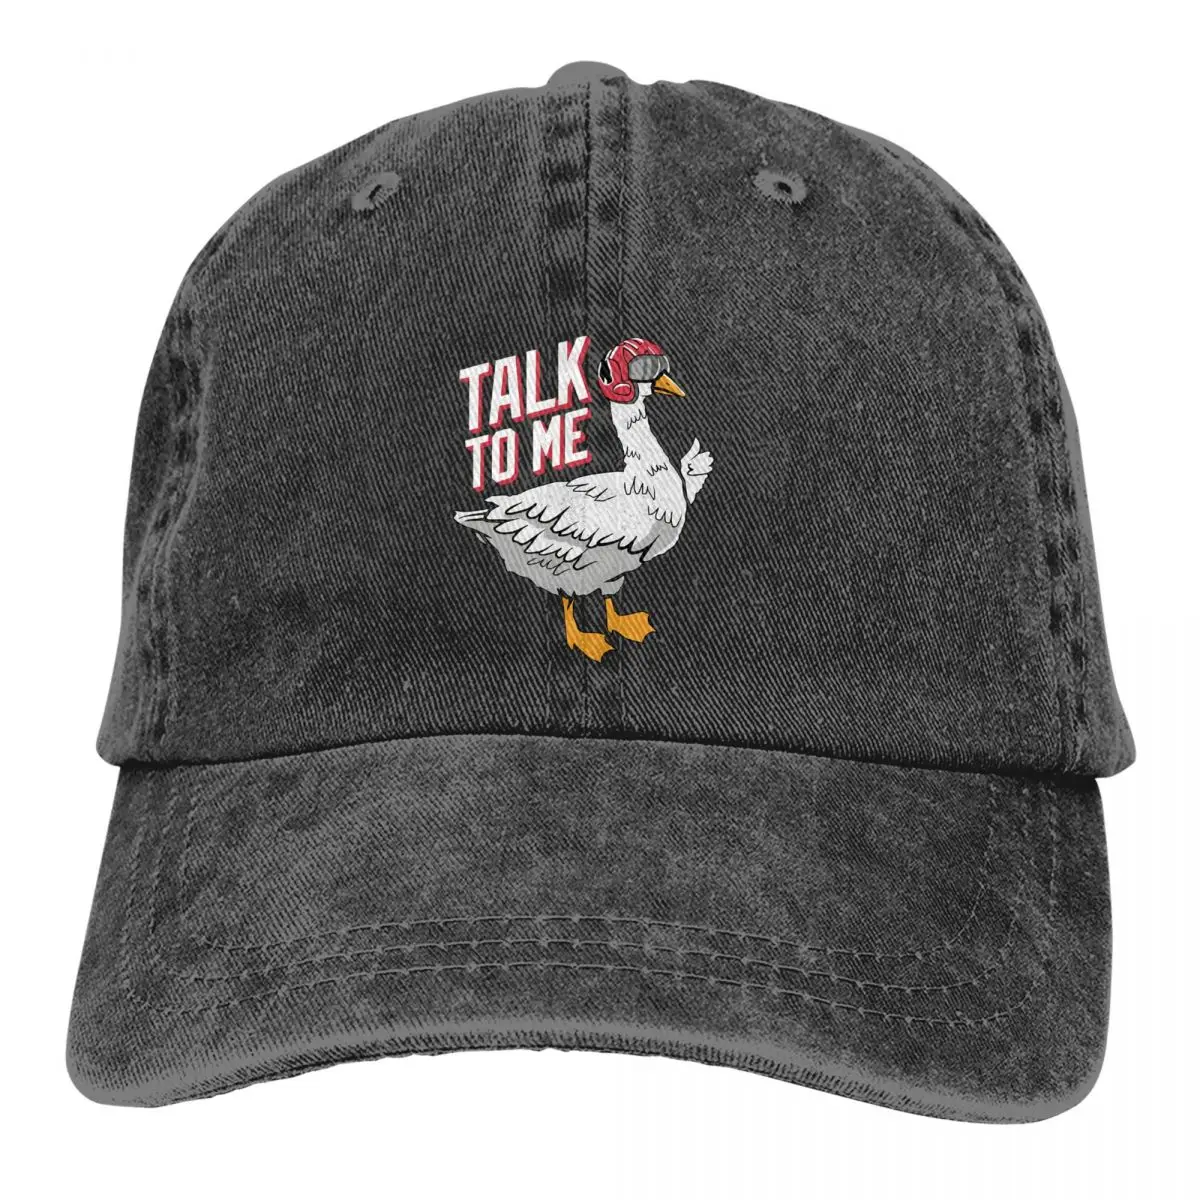 

Pure Color Dad Hats Talk To Me Goose Women's Hat Sun Visor Baseball Caps Top Gun Maverick Goose Film Peaked Cap